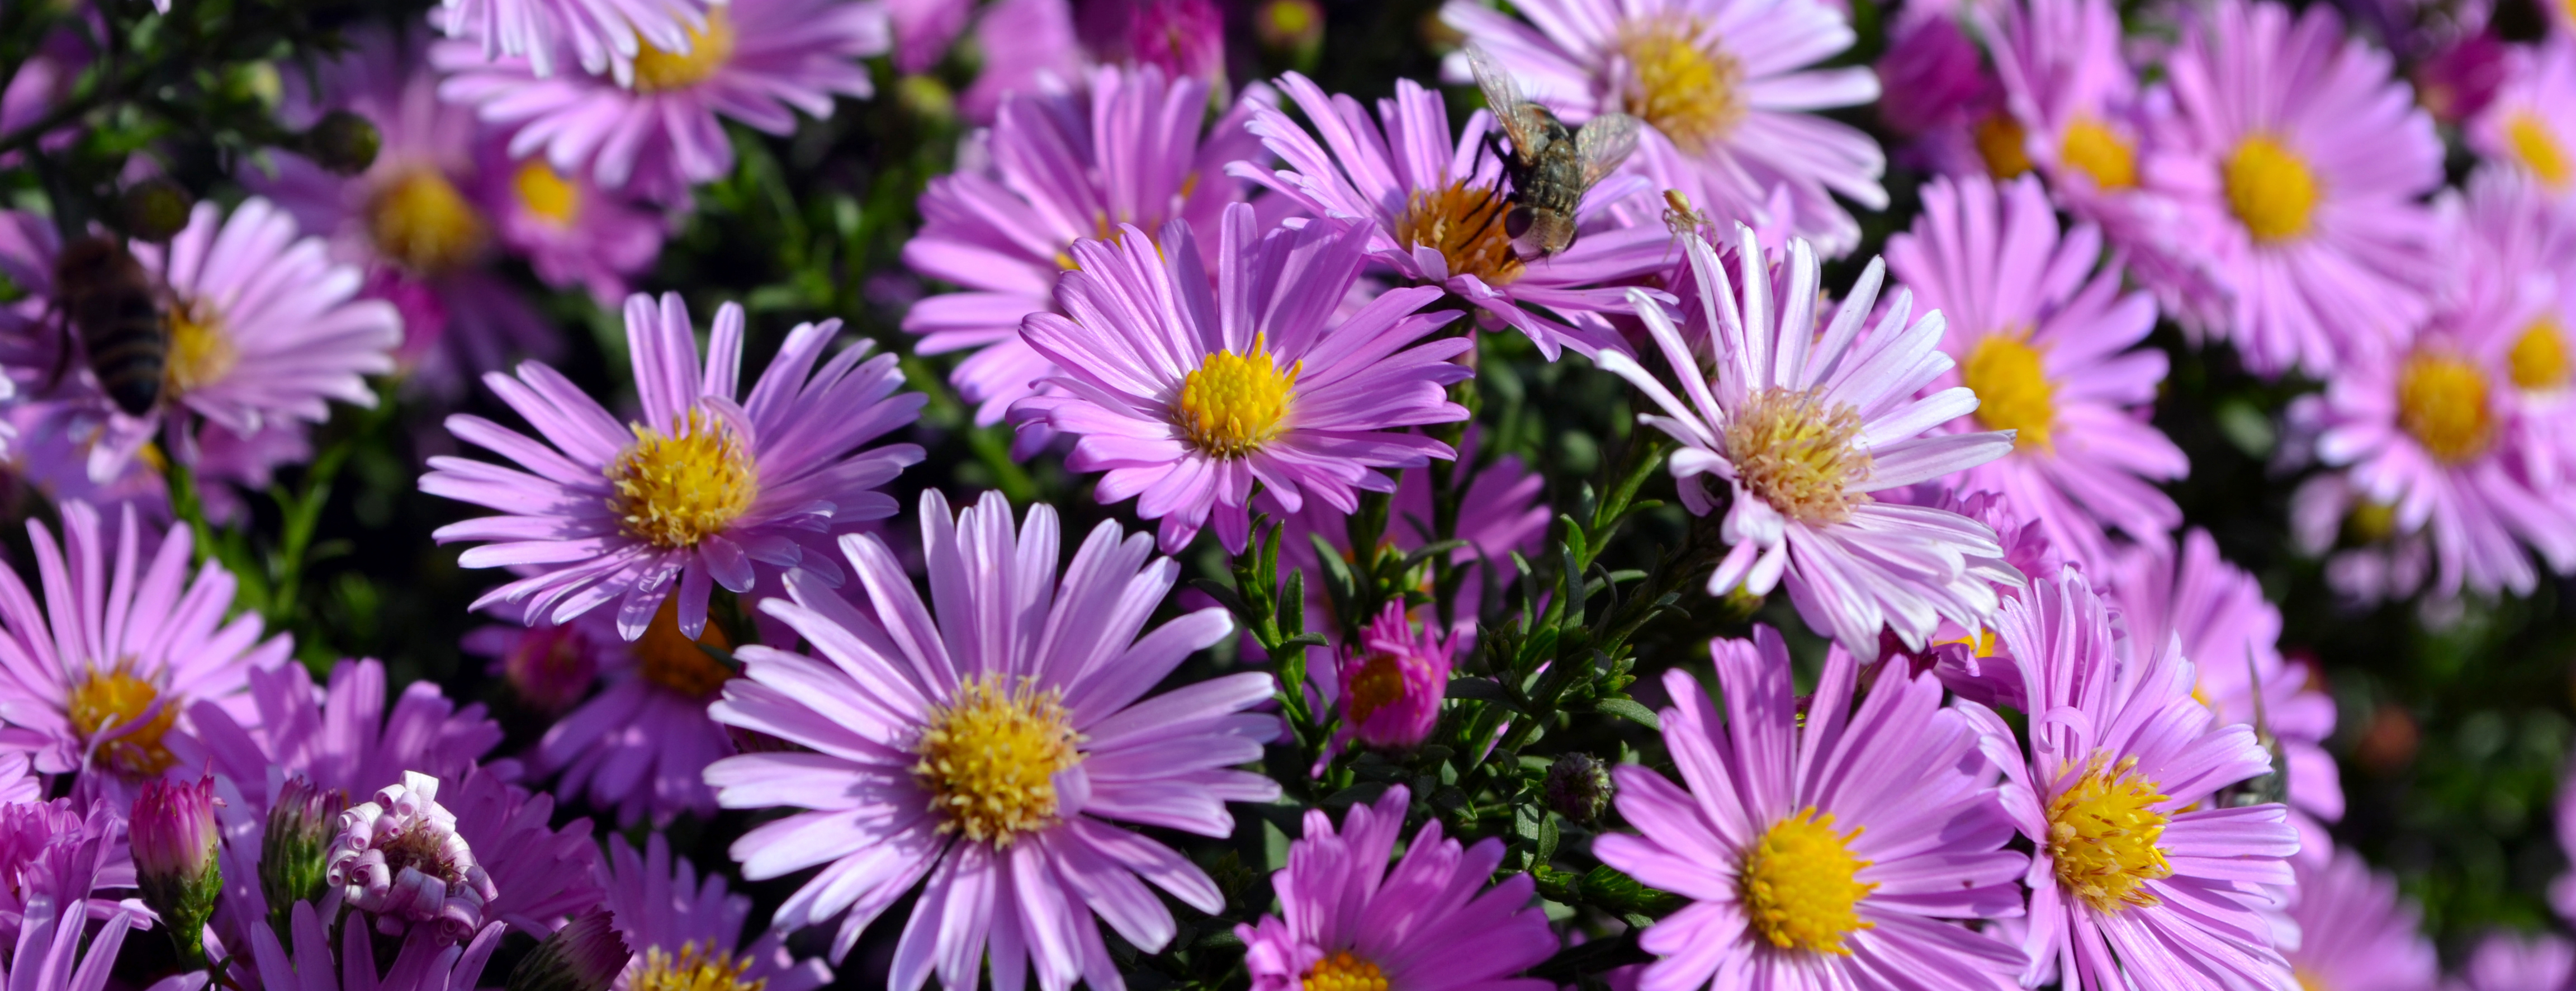 Field of purple aster flowers